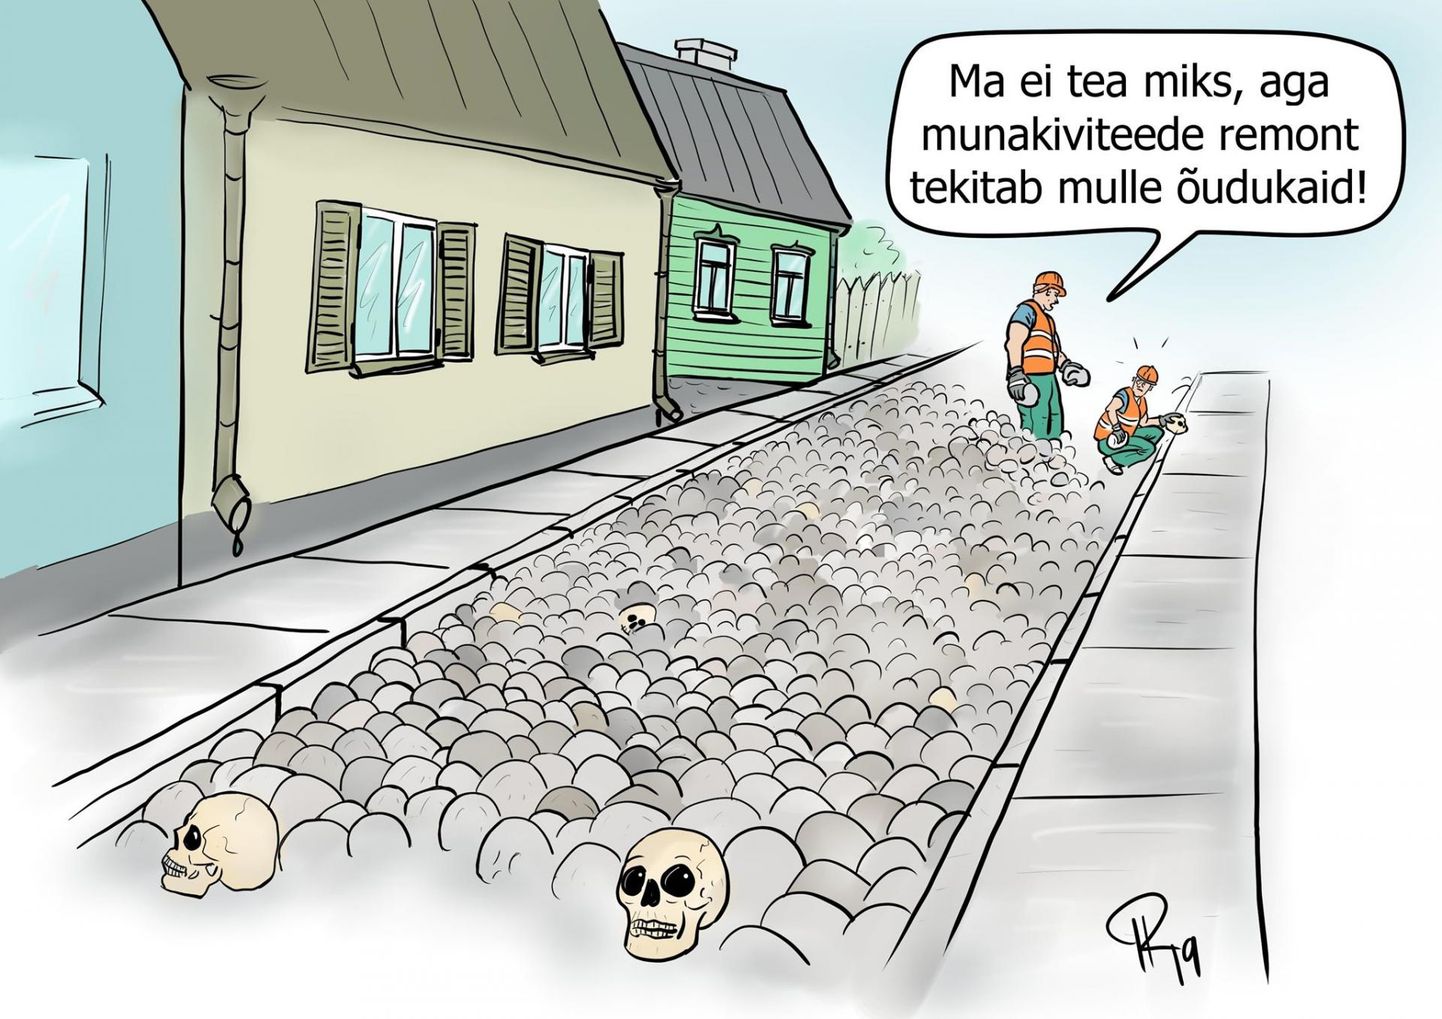 Karikatuur "Luukered Pikal tänaval".